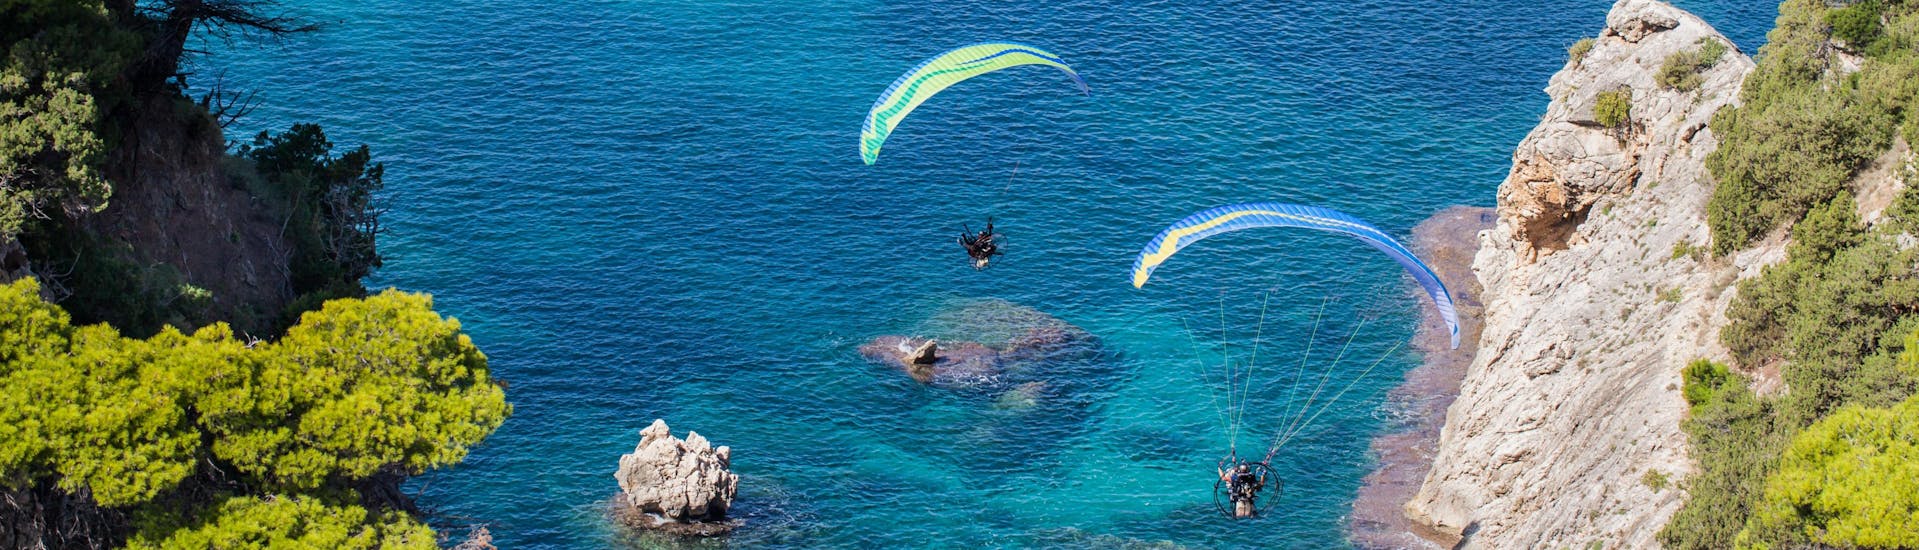 Ein beeindruckter Teilnehmer eines Gleitschirm Tandemflugs über dem Paragliding Hotspot Kreta.